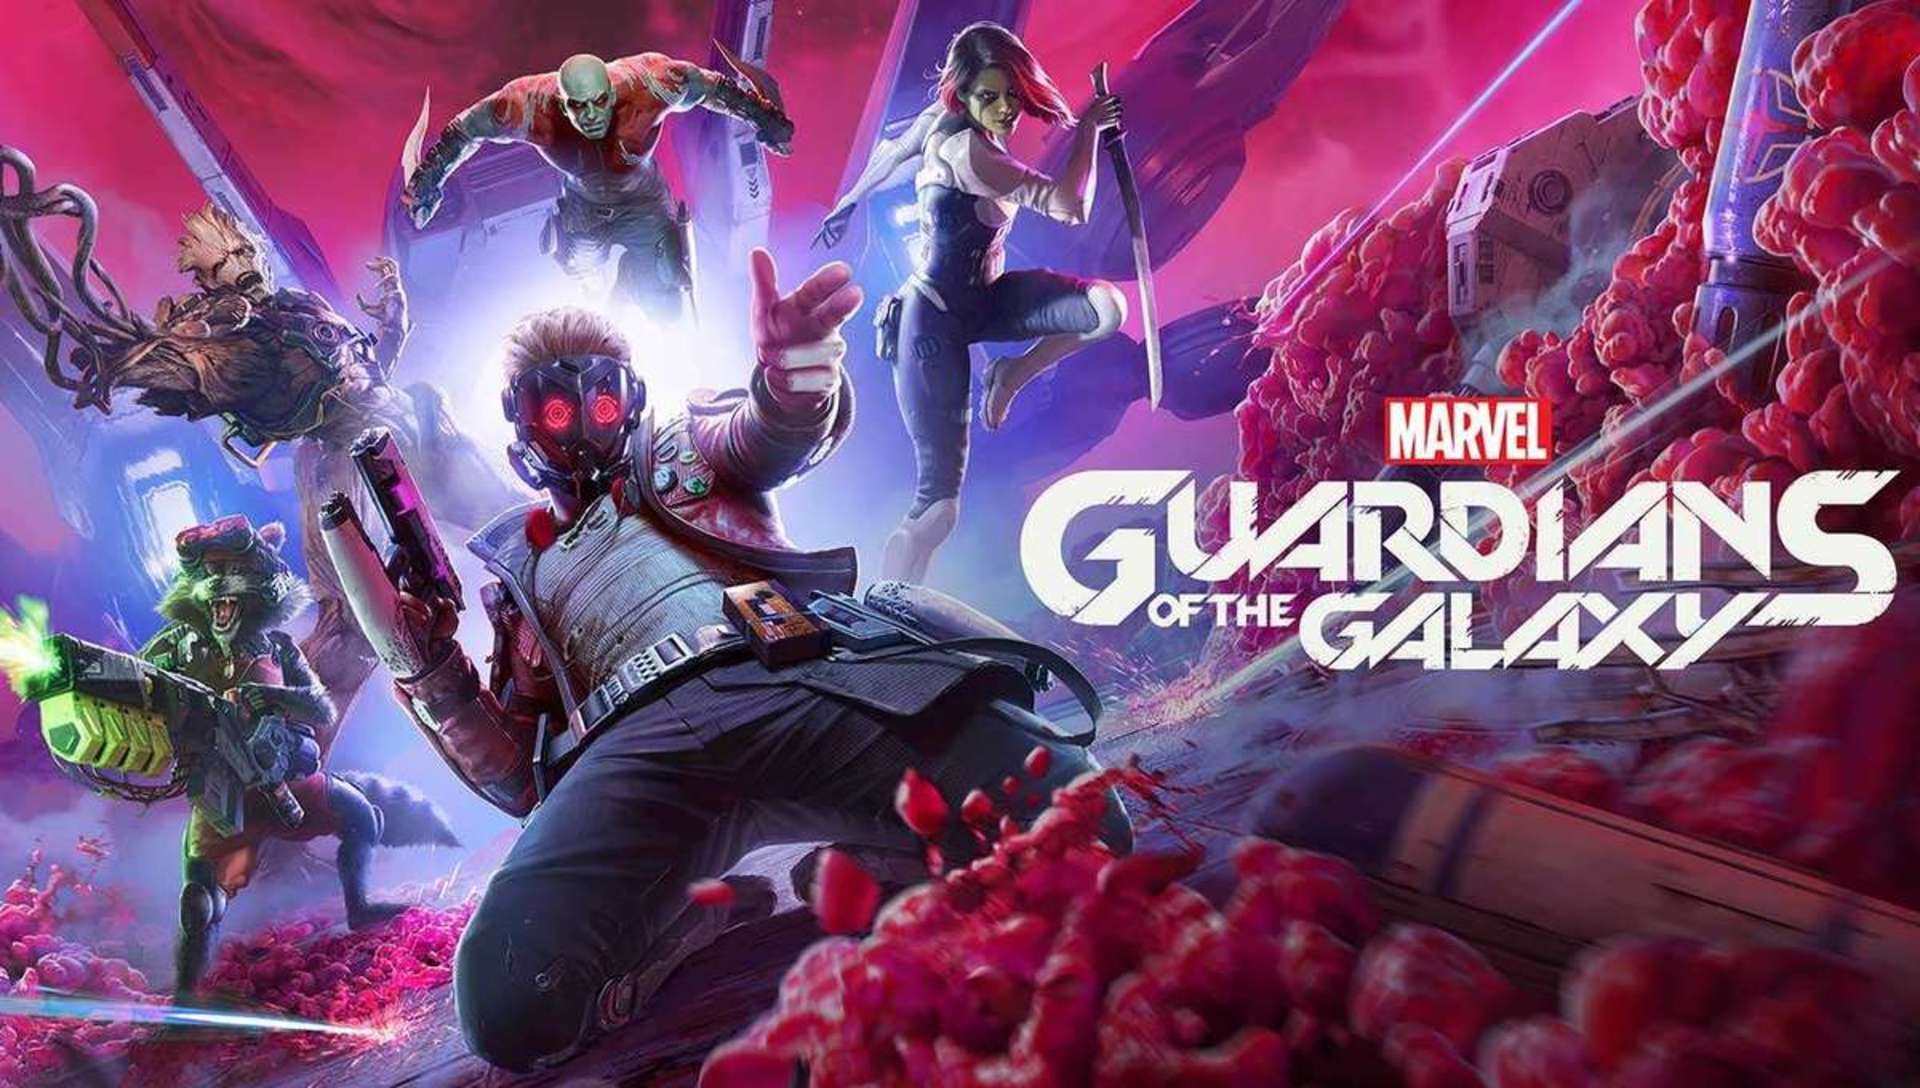 Tin vui cho game thủ, dải ngân hà của Guardians of the Galaxy bị thu bé lại chỉ nặng còn 80GB thay vì 150GB